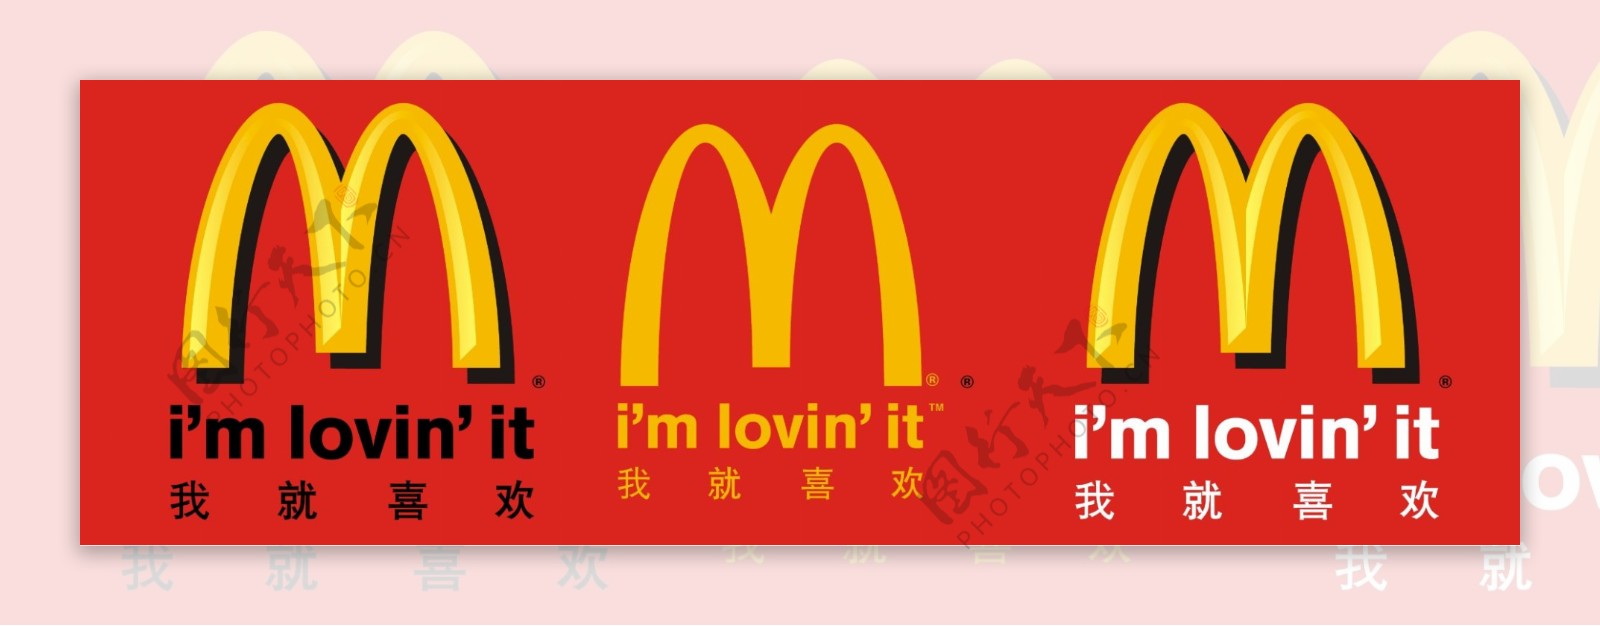 麦当劳标志图片